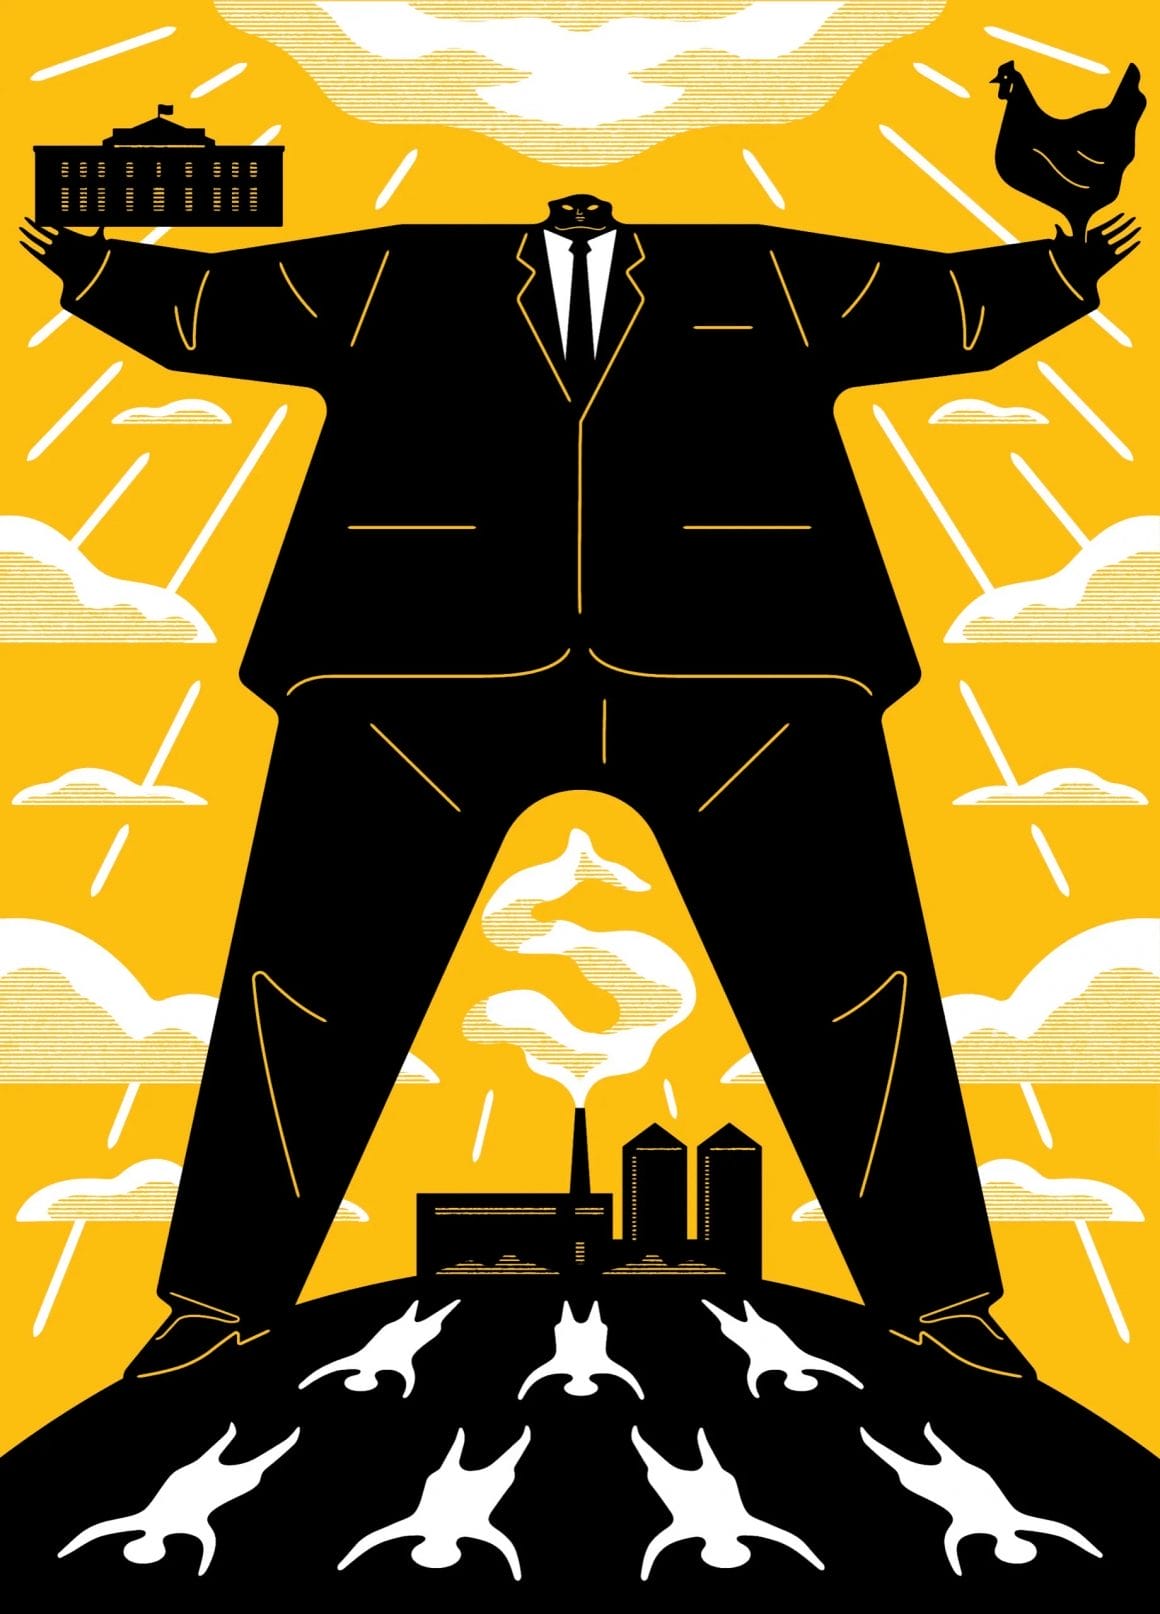 Illustration pour un article de The New Yorker. Un homme géant en costume tient d'une main la maison blanche, de l'autre un poulet. A ses pieds une usine produit une fumée en forme de dollar, et des ombres de personnes au sol se font voir.